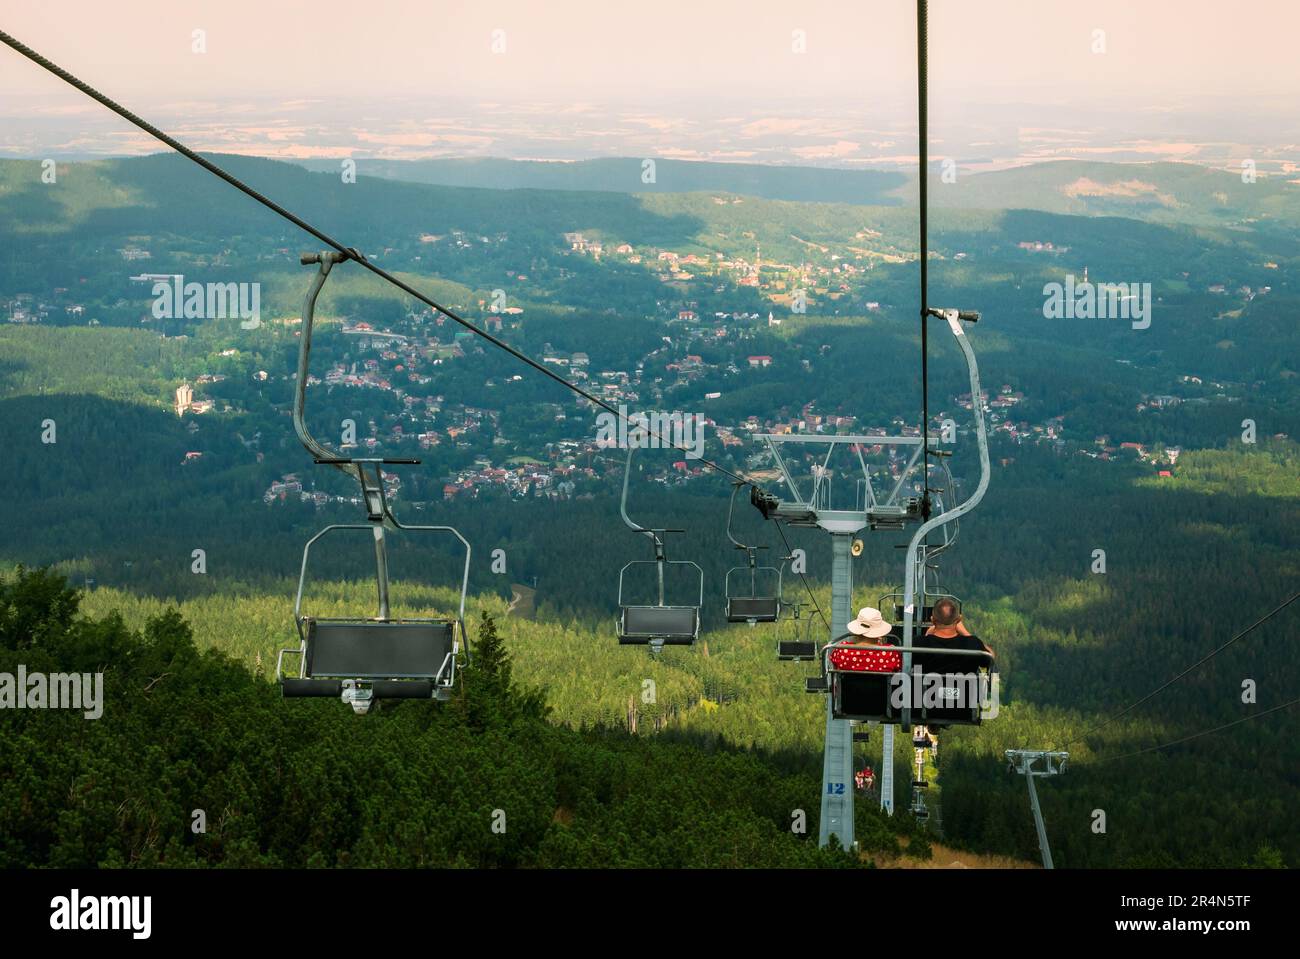 Chairlift in Szklarska Poręba, Poland, Giant Mountains. Stock Photo